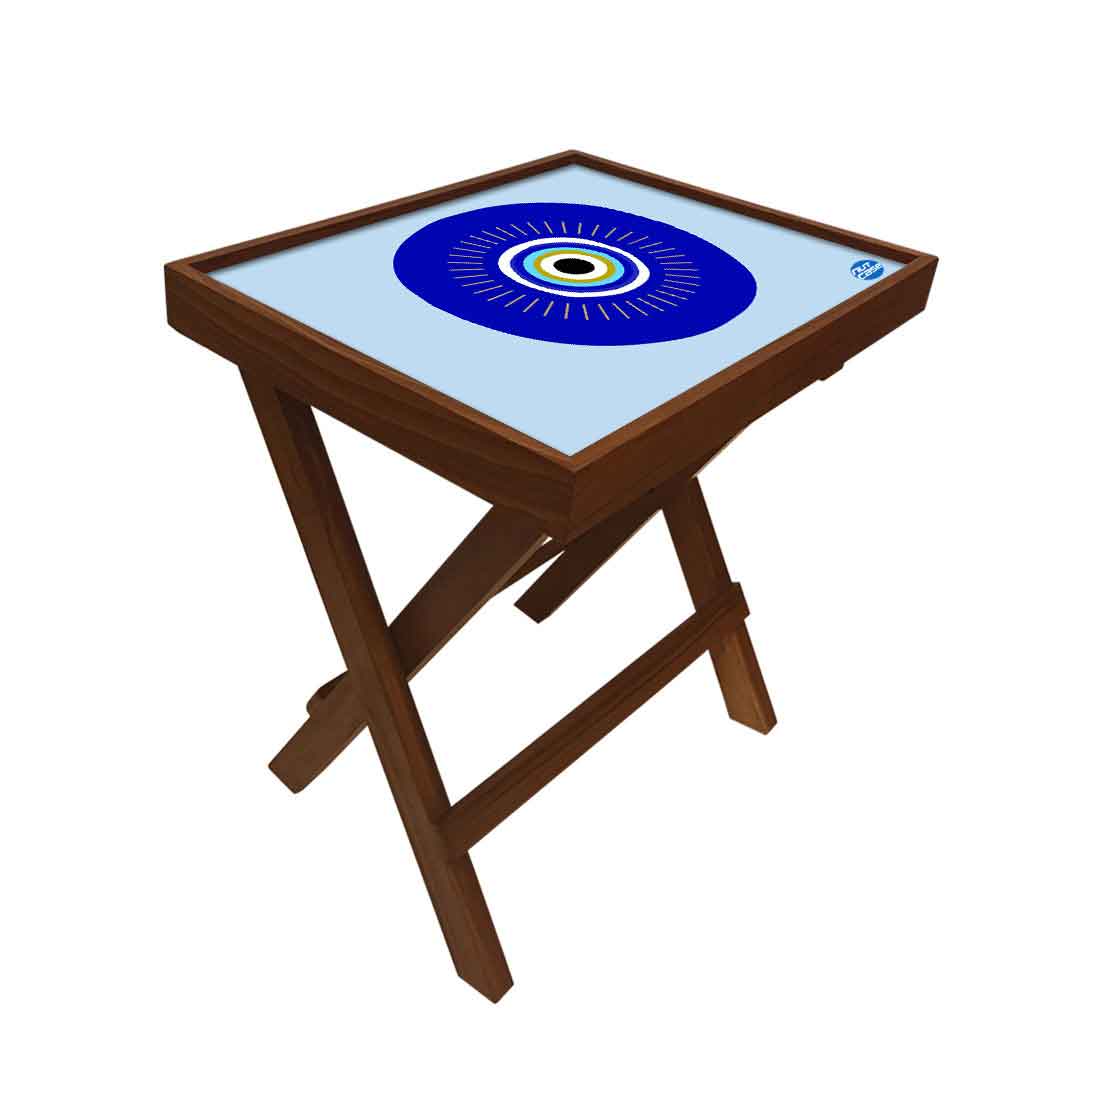 Designer Folding Wooden Side Table for Bedroom Living Room - Evil Eye Protector Nutcase